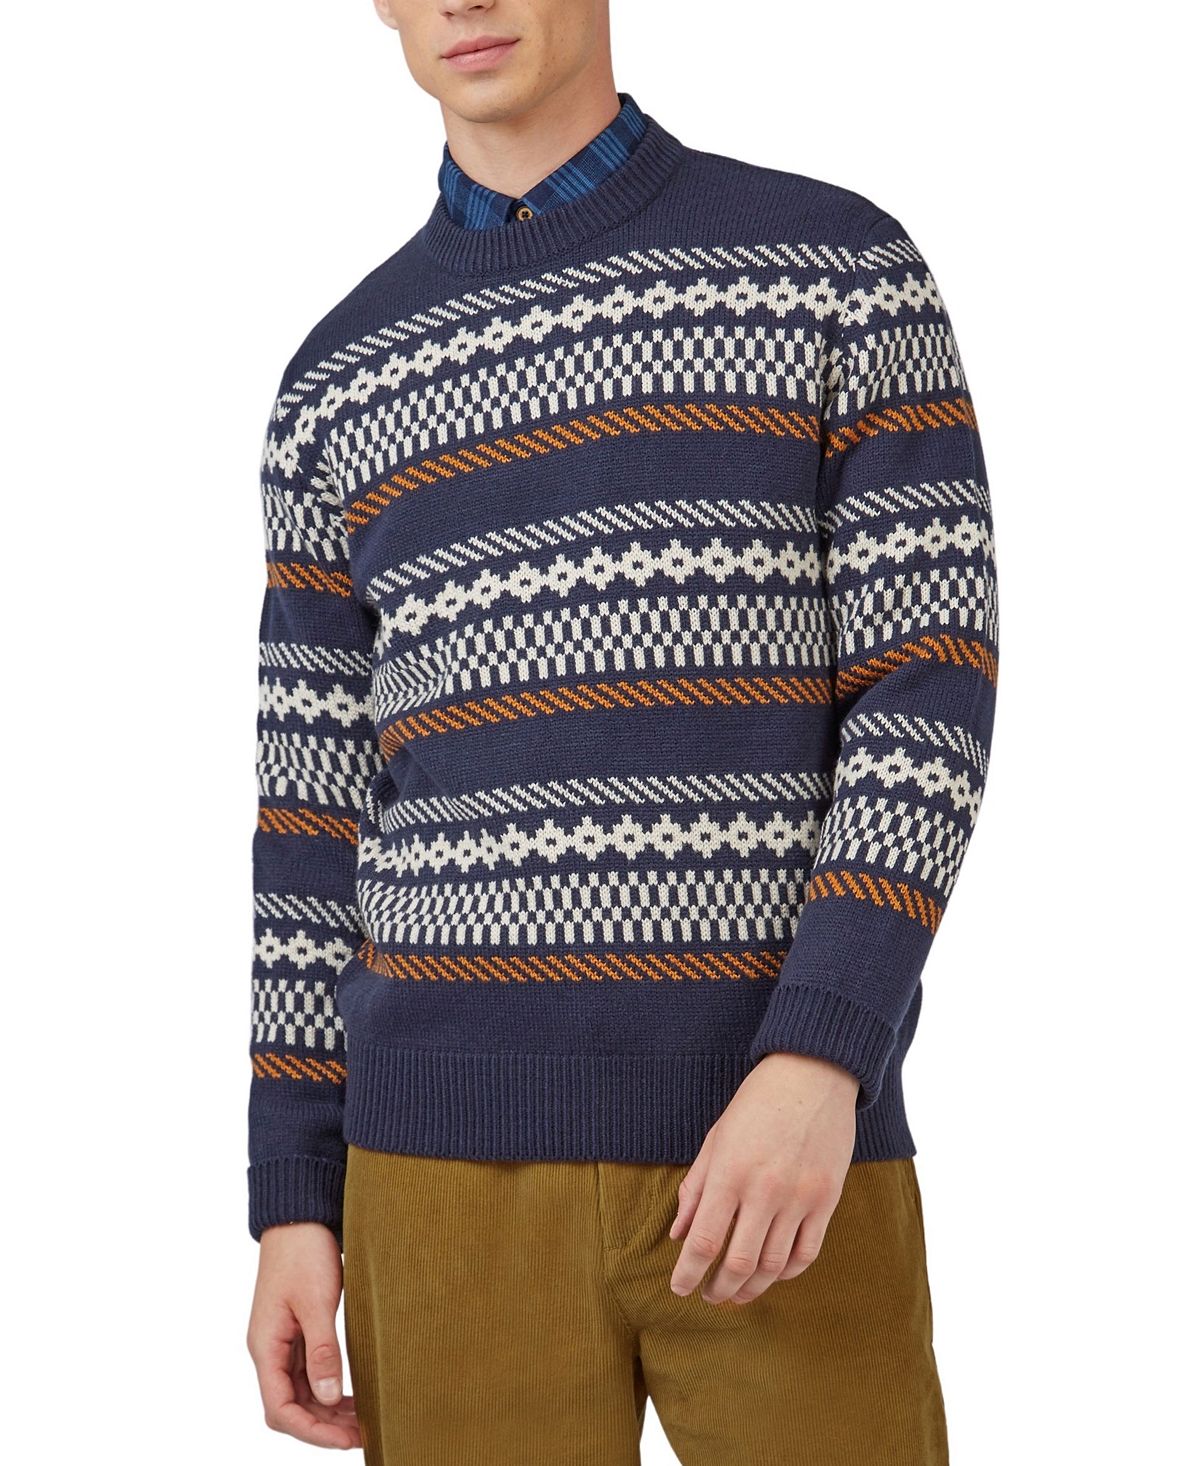 Мужской свитер крупной вязки с круглым вырезом и длинными рукавами жаккардового цвета Ben Sherman ben sherman шорты и бермуды